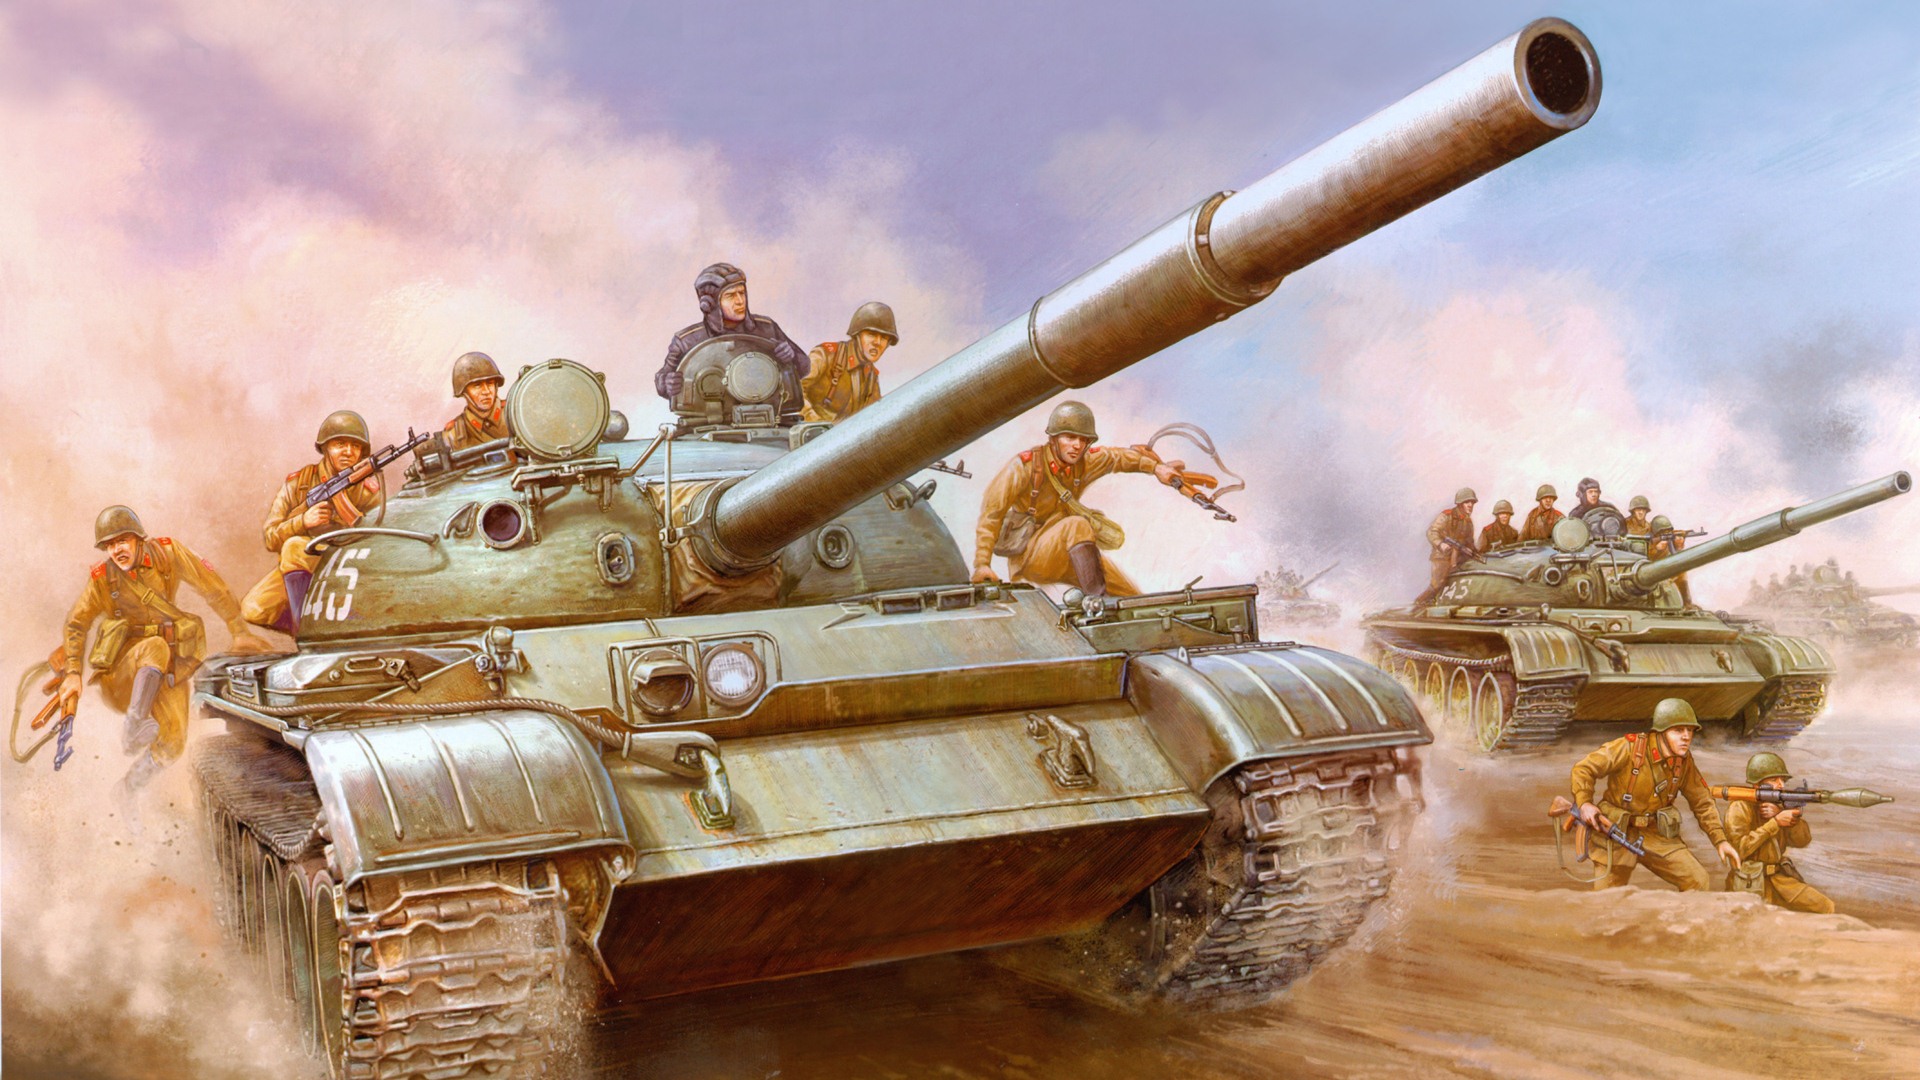 軍の戦車、装甲HDの絵画壁紙 #16 - 1920x1080